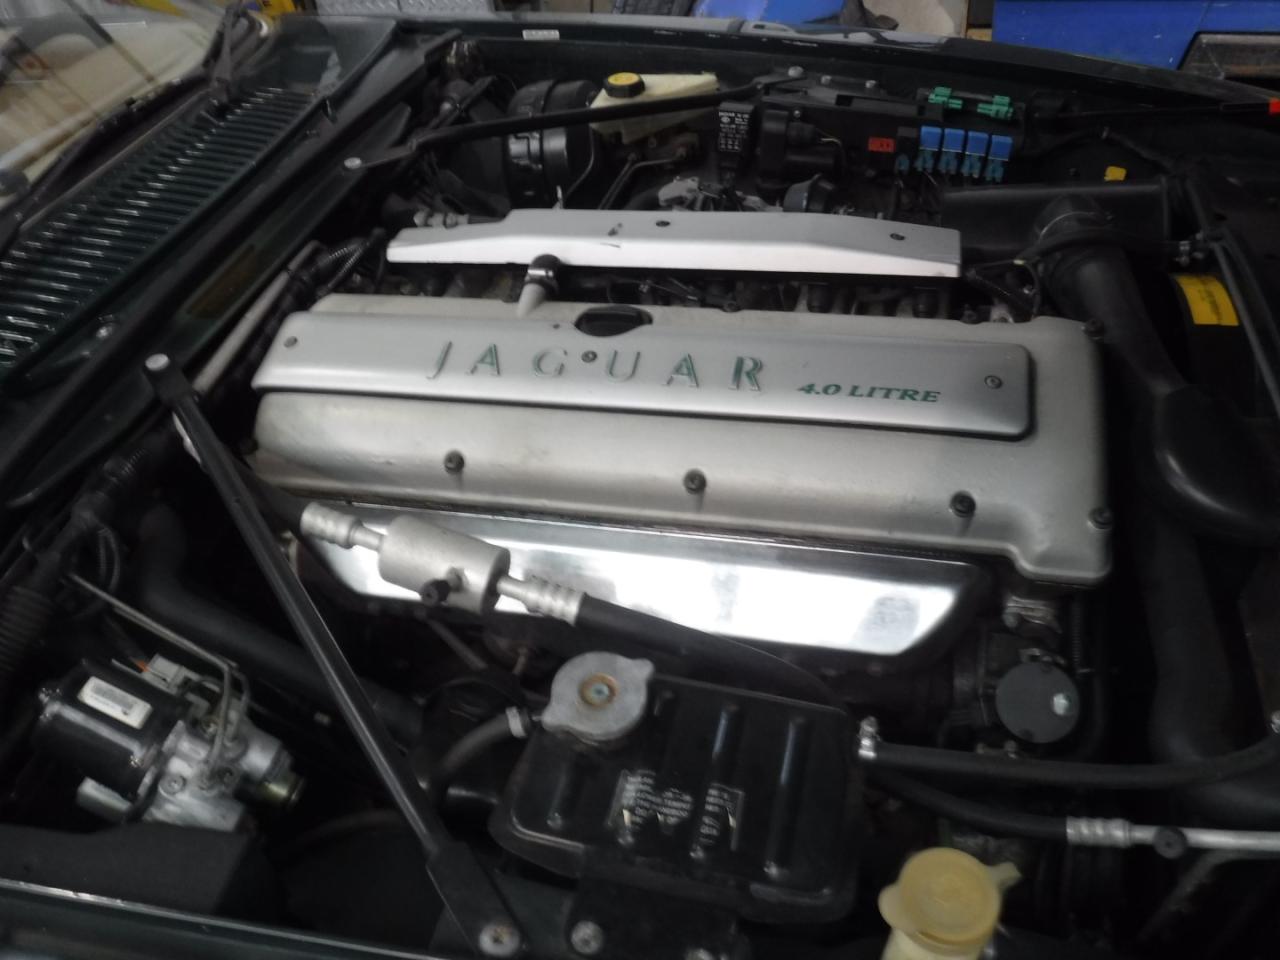 1995 Jaguar XJS 6 cil Convertible